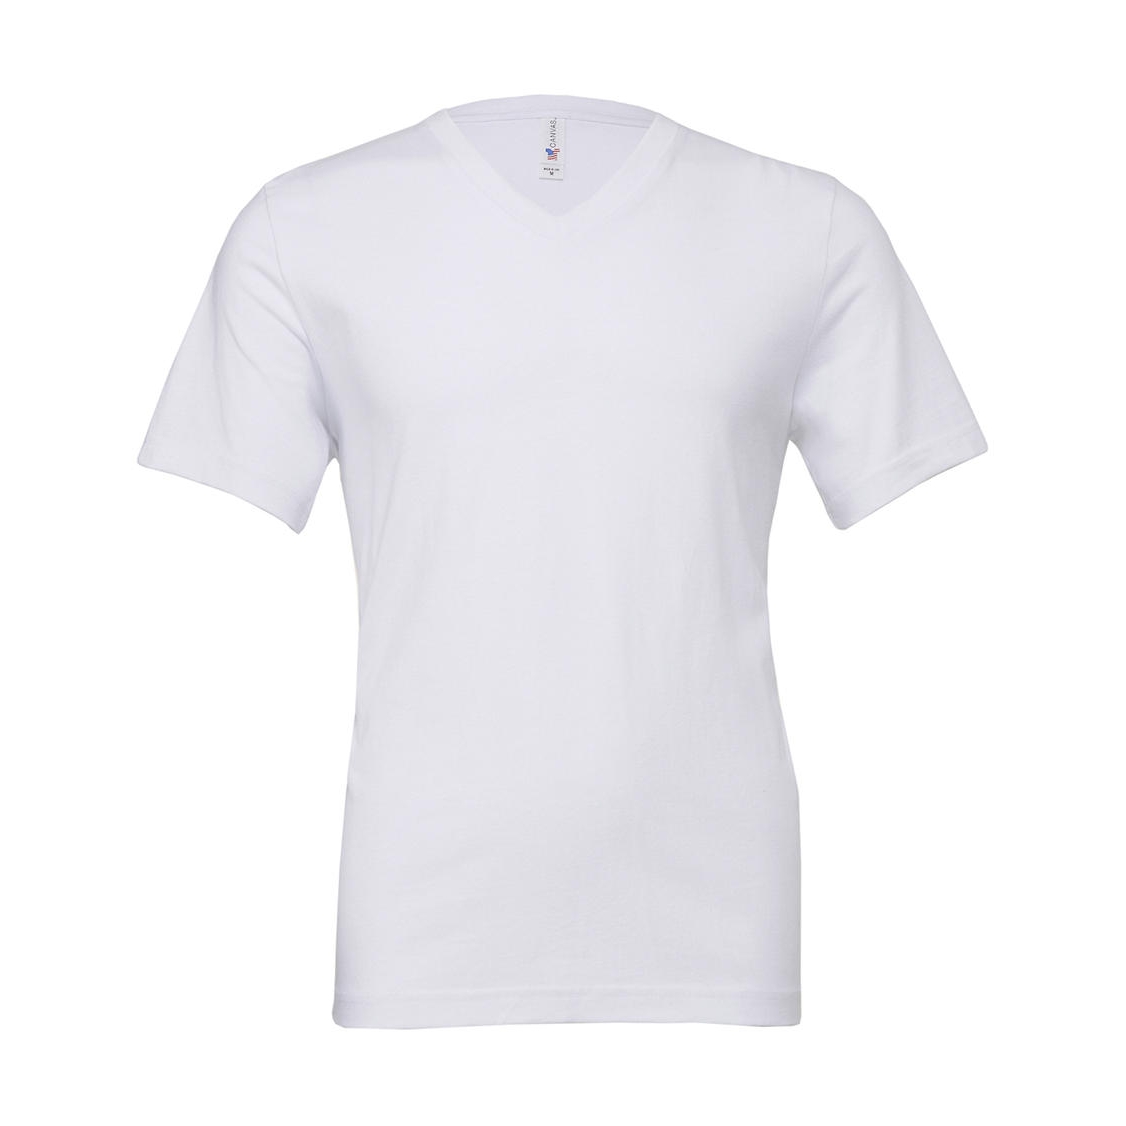 Tričko Bella Jersey V-Neck - bílé, XL